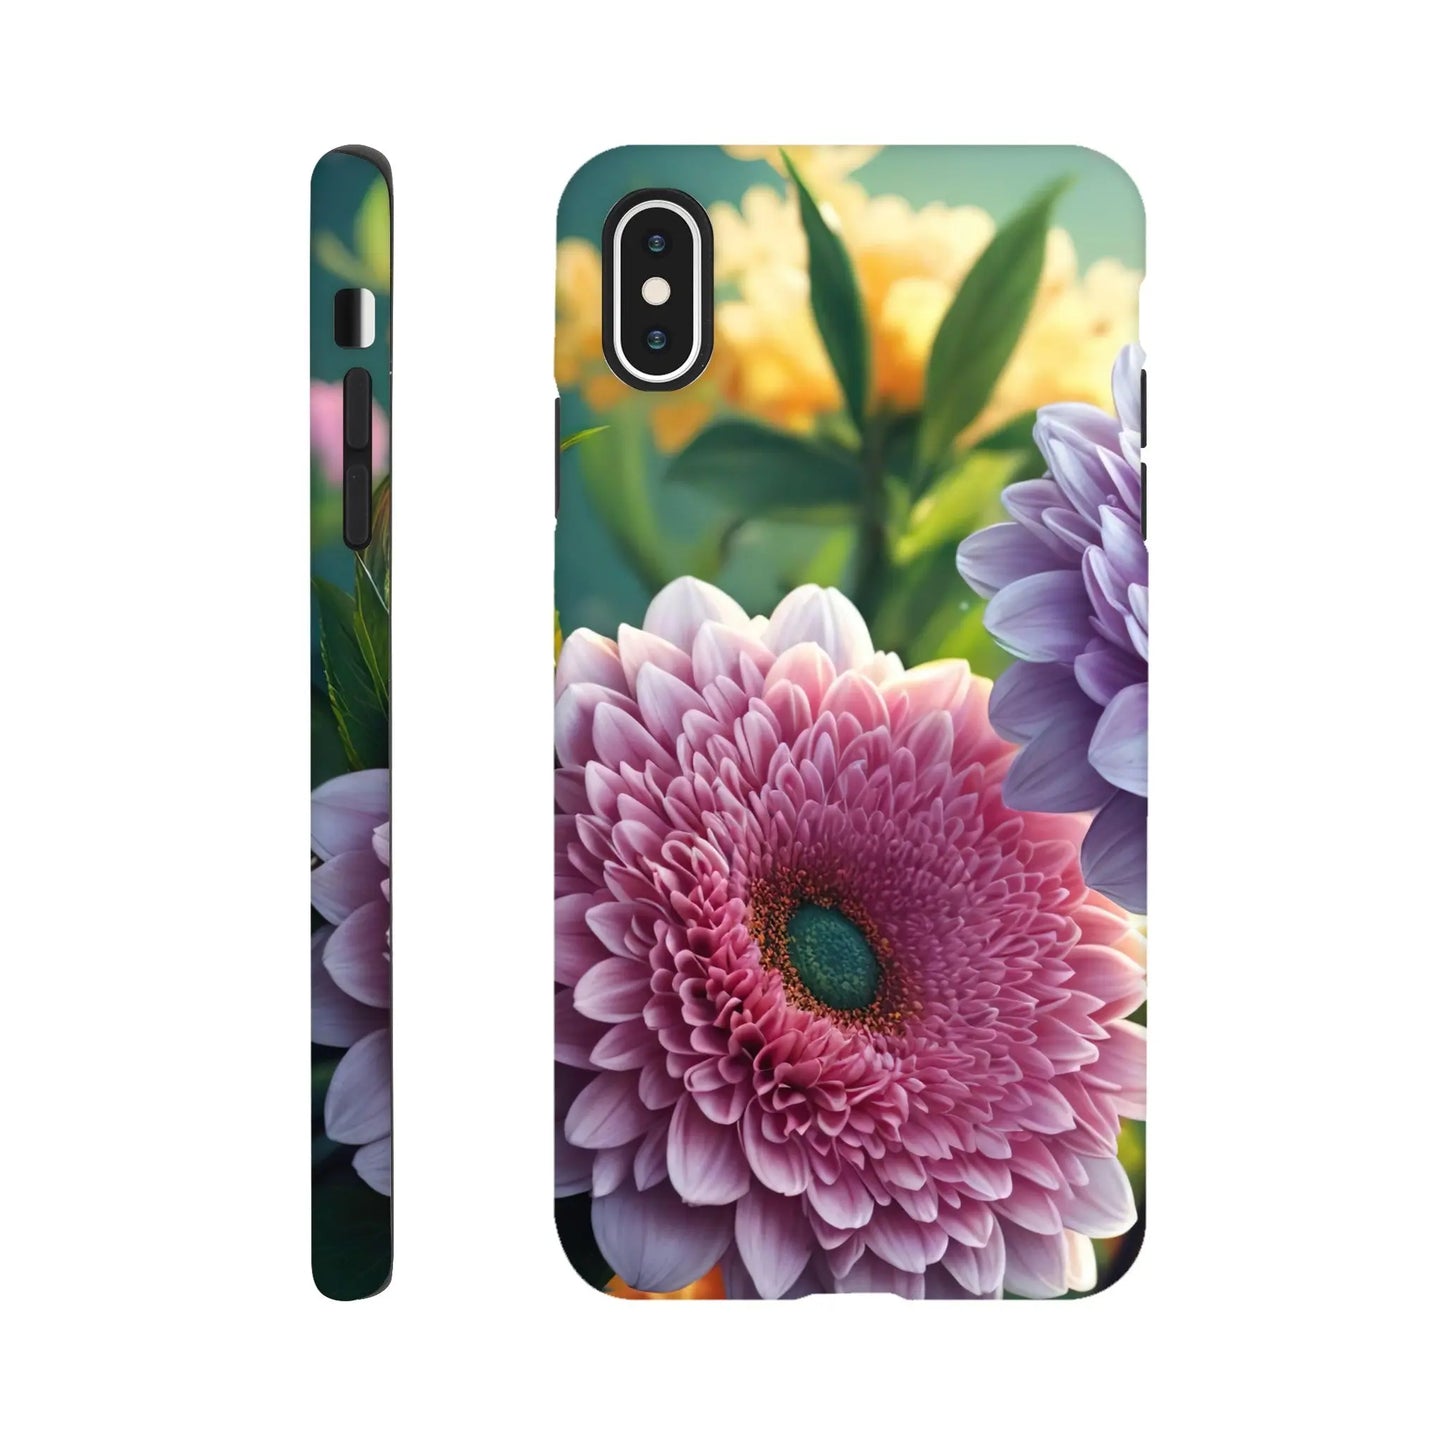 Smartphone-Hülle "Hart" - Blumen Vielfalt - Foto Stil, KI-Kunst, Pflanzen, iPhone-XS-Max - RolConArt